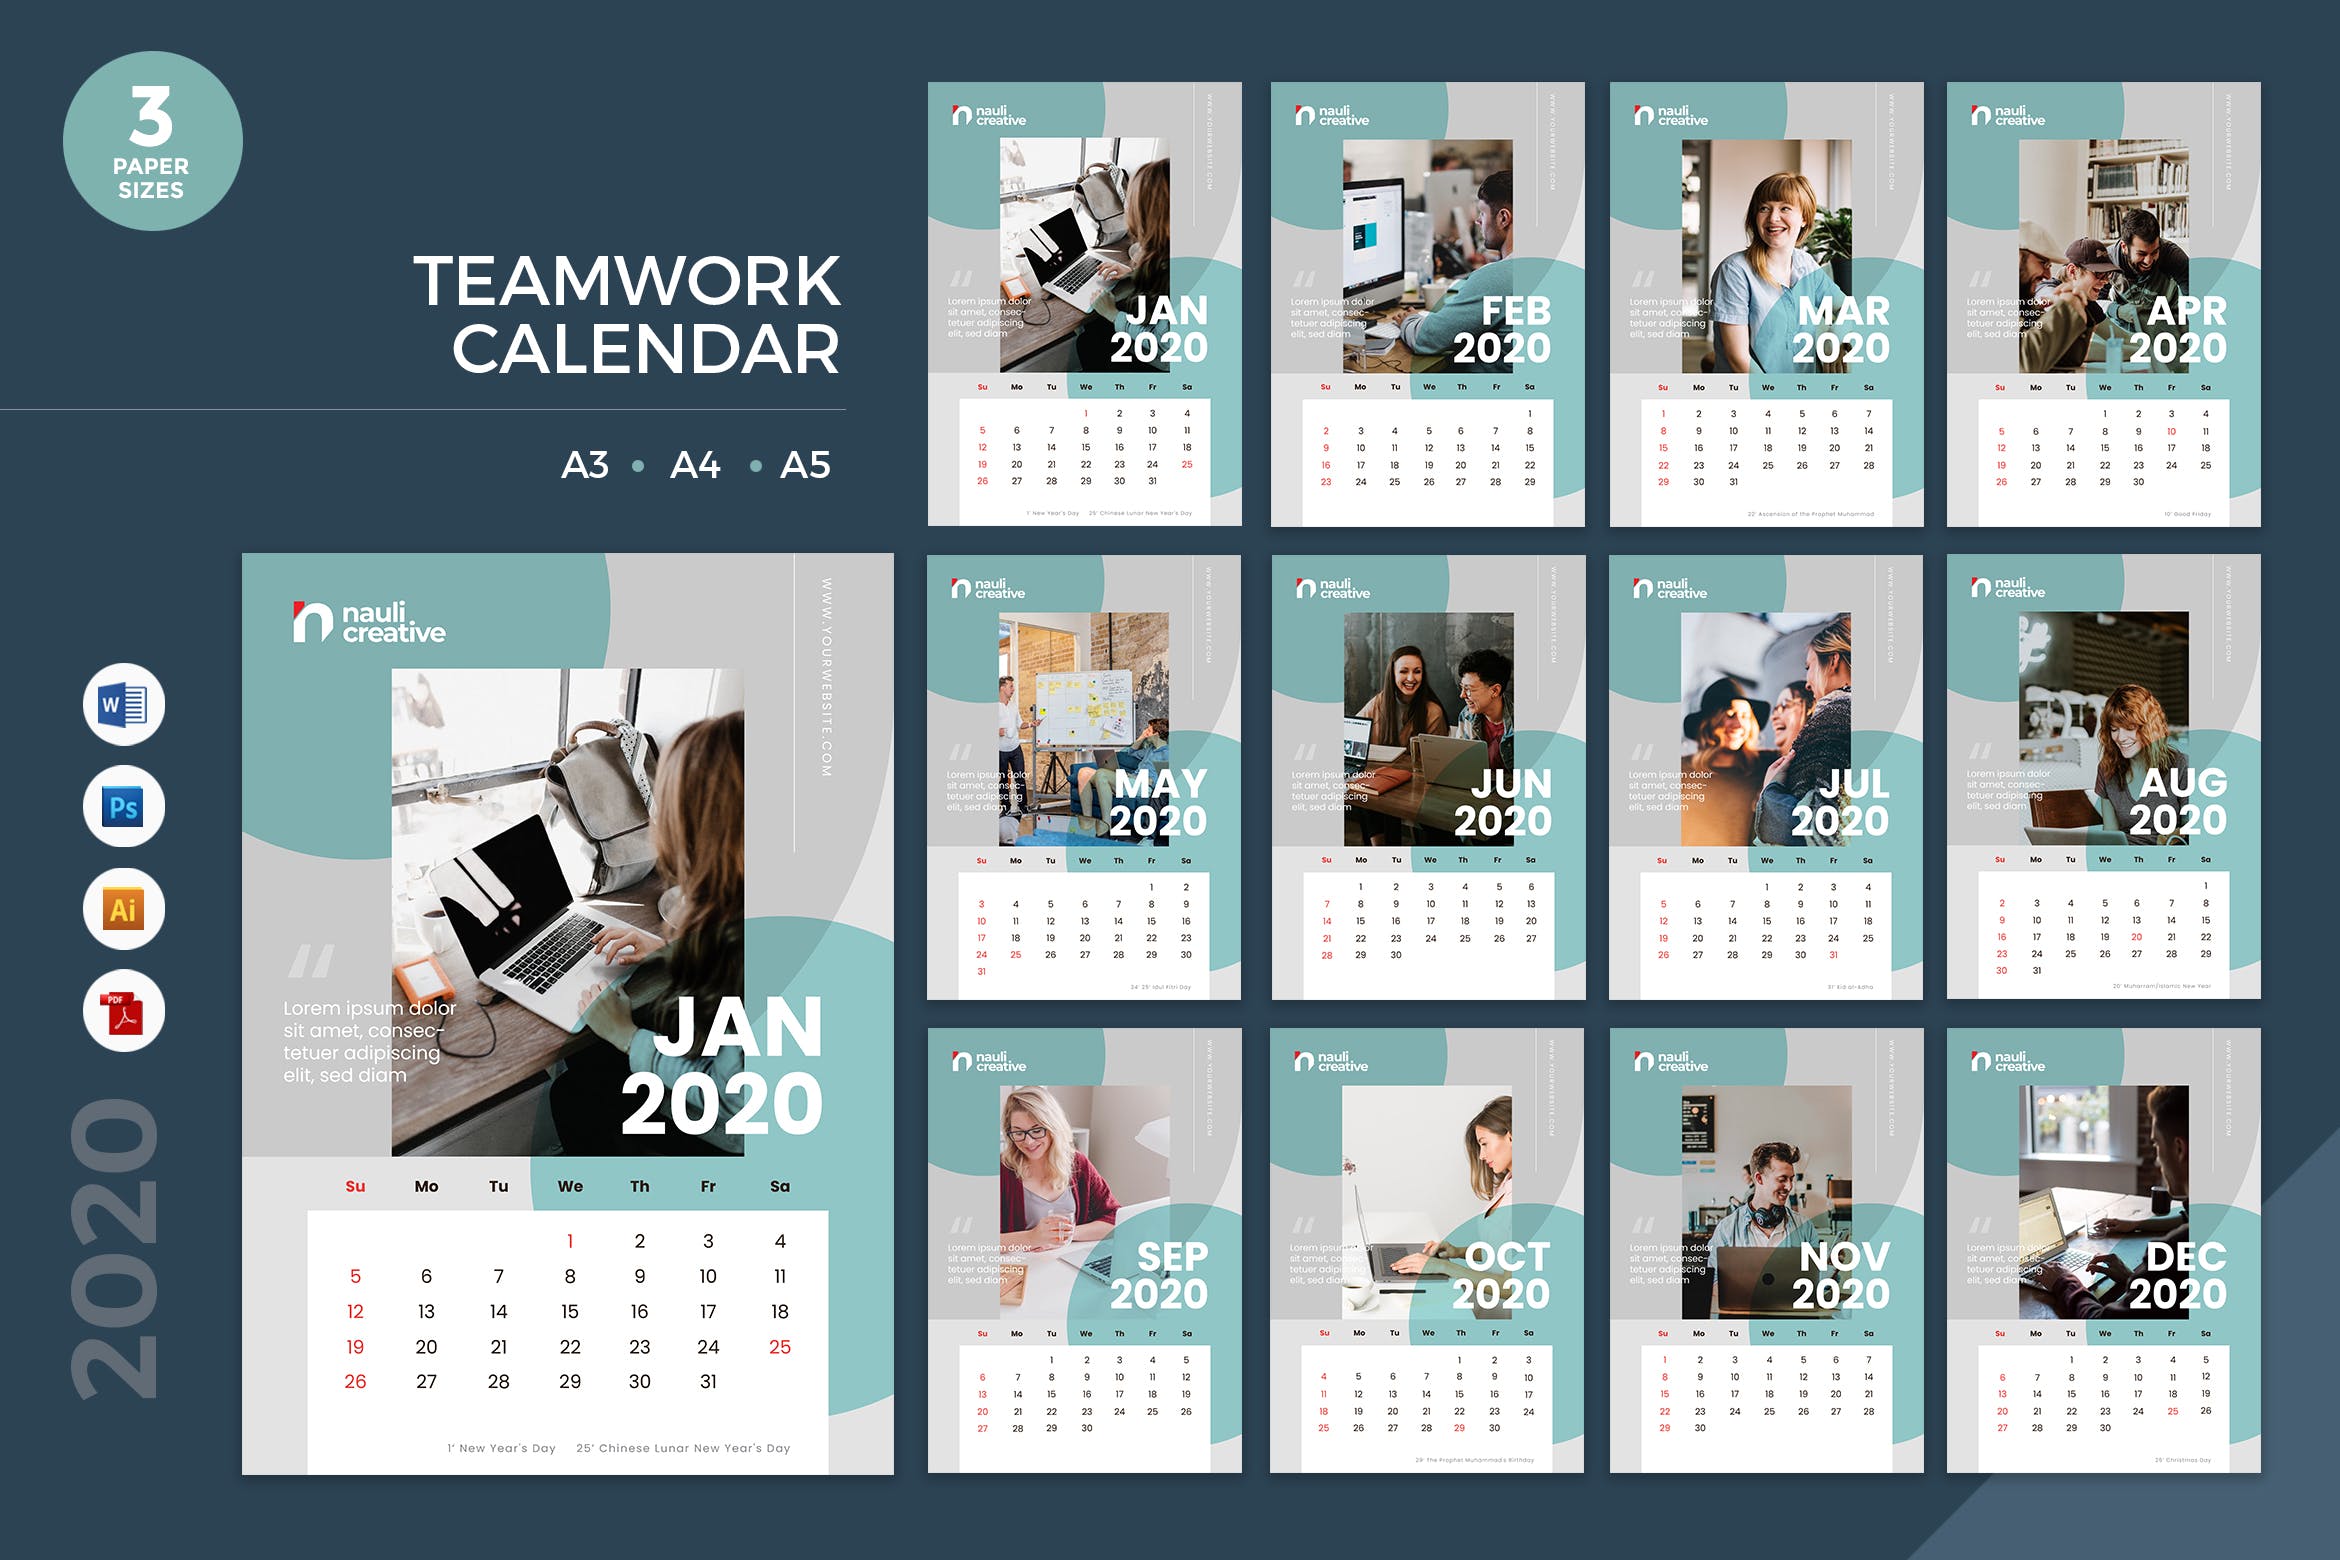 团队风采剪影2020年日历表设计模板 Teamwork Calendar 2020 Calendar – AI, DOC, PSD插图